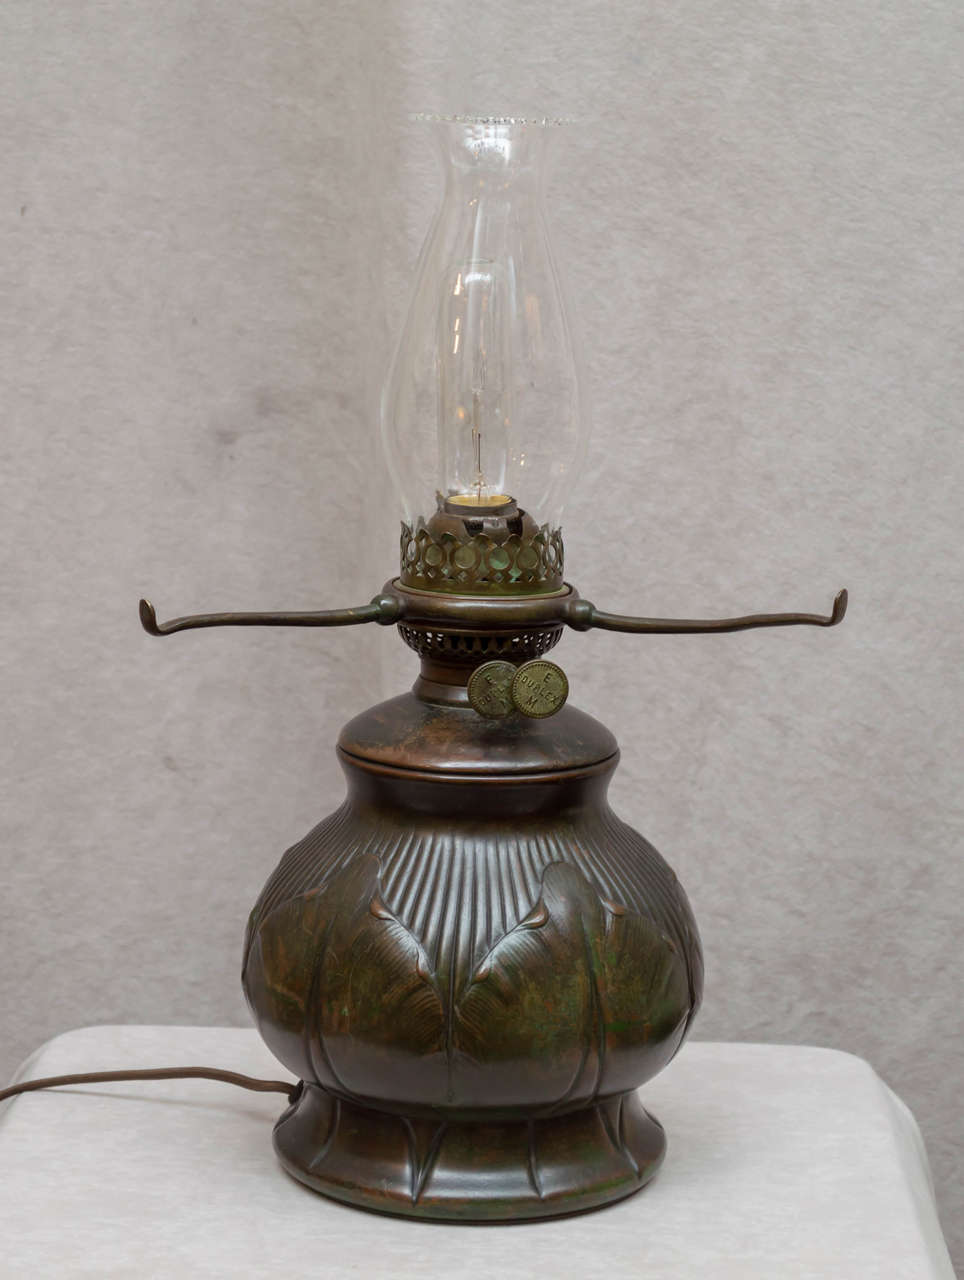 Blown Glass Tiffany Lamp with Handblown Damascene Shade